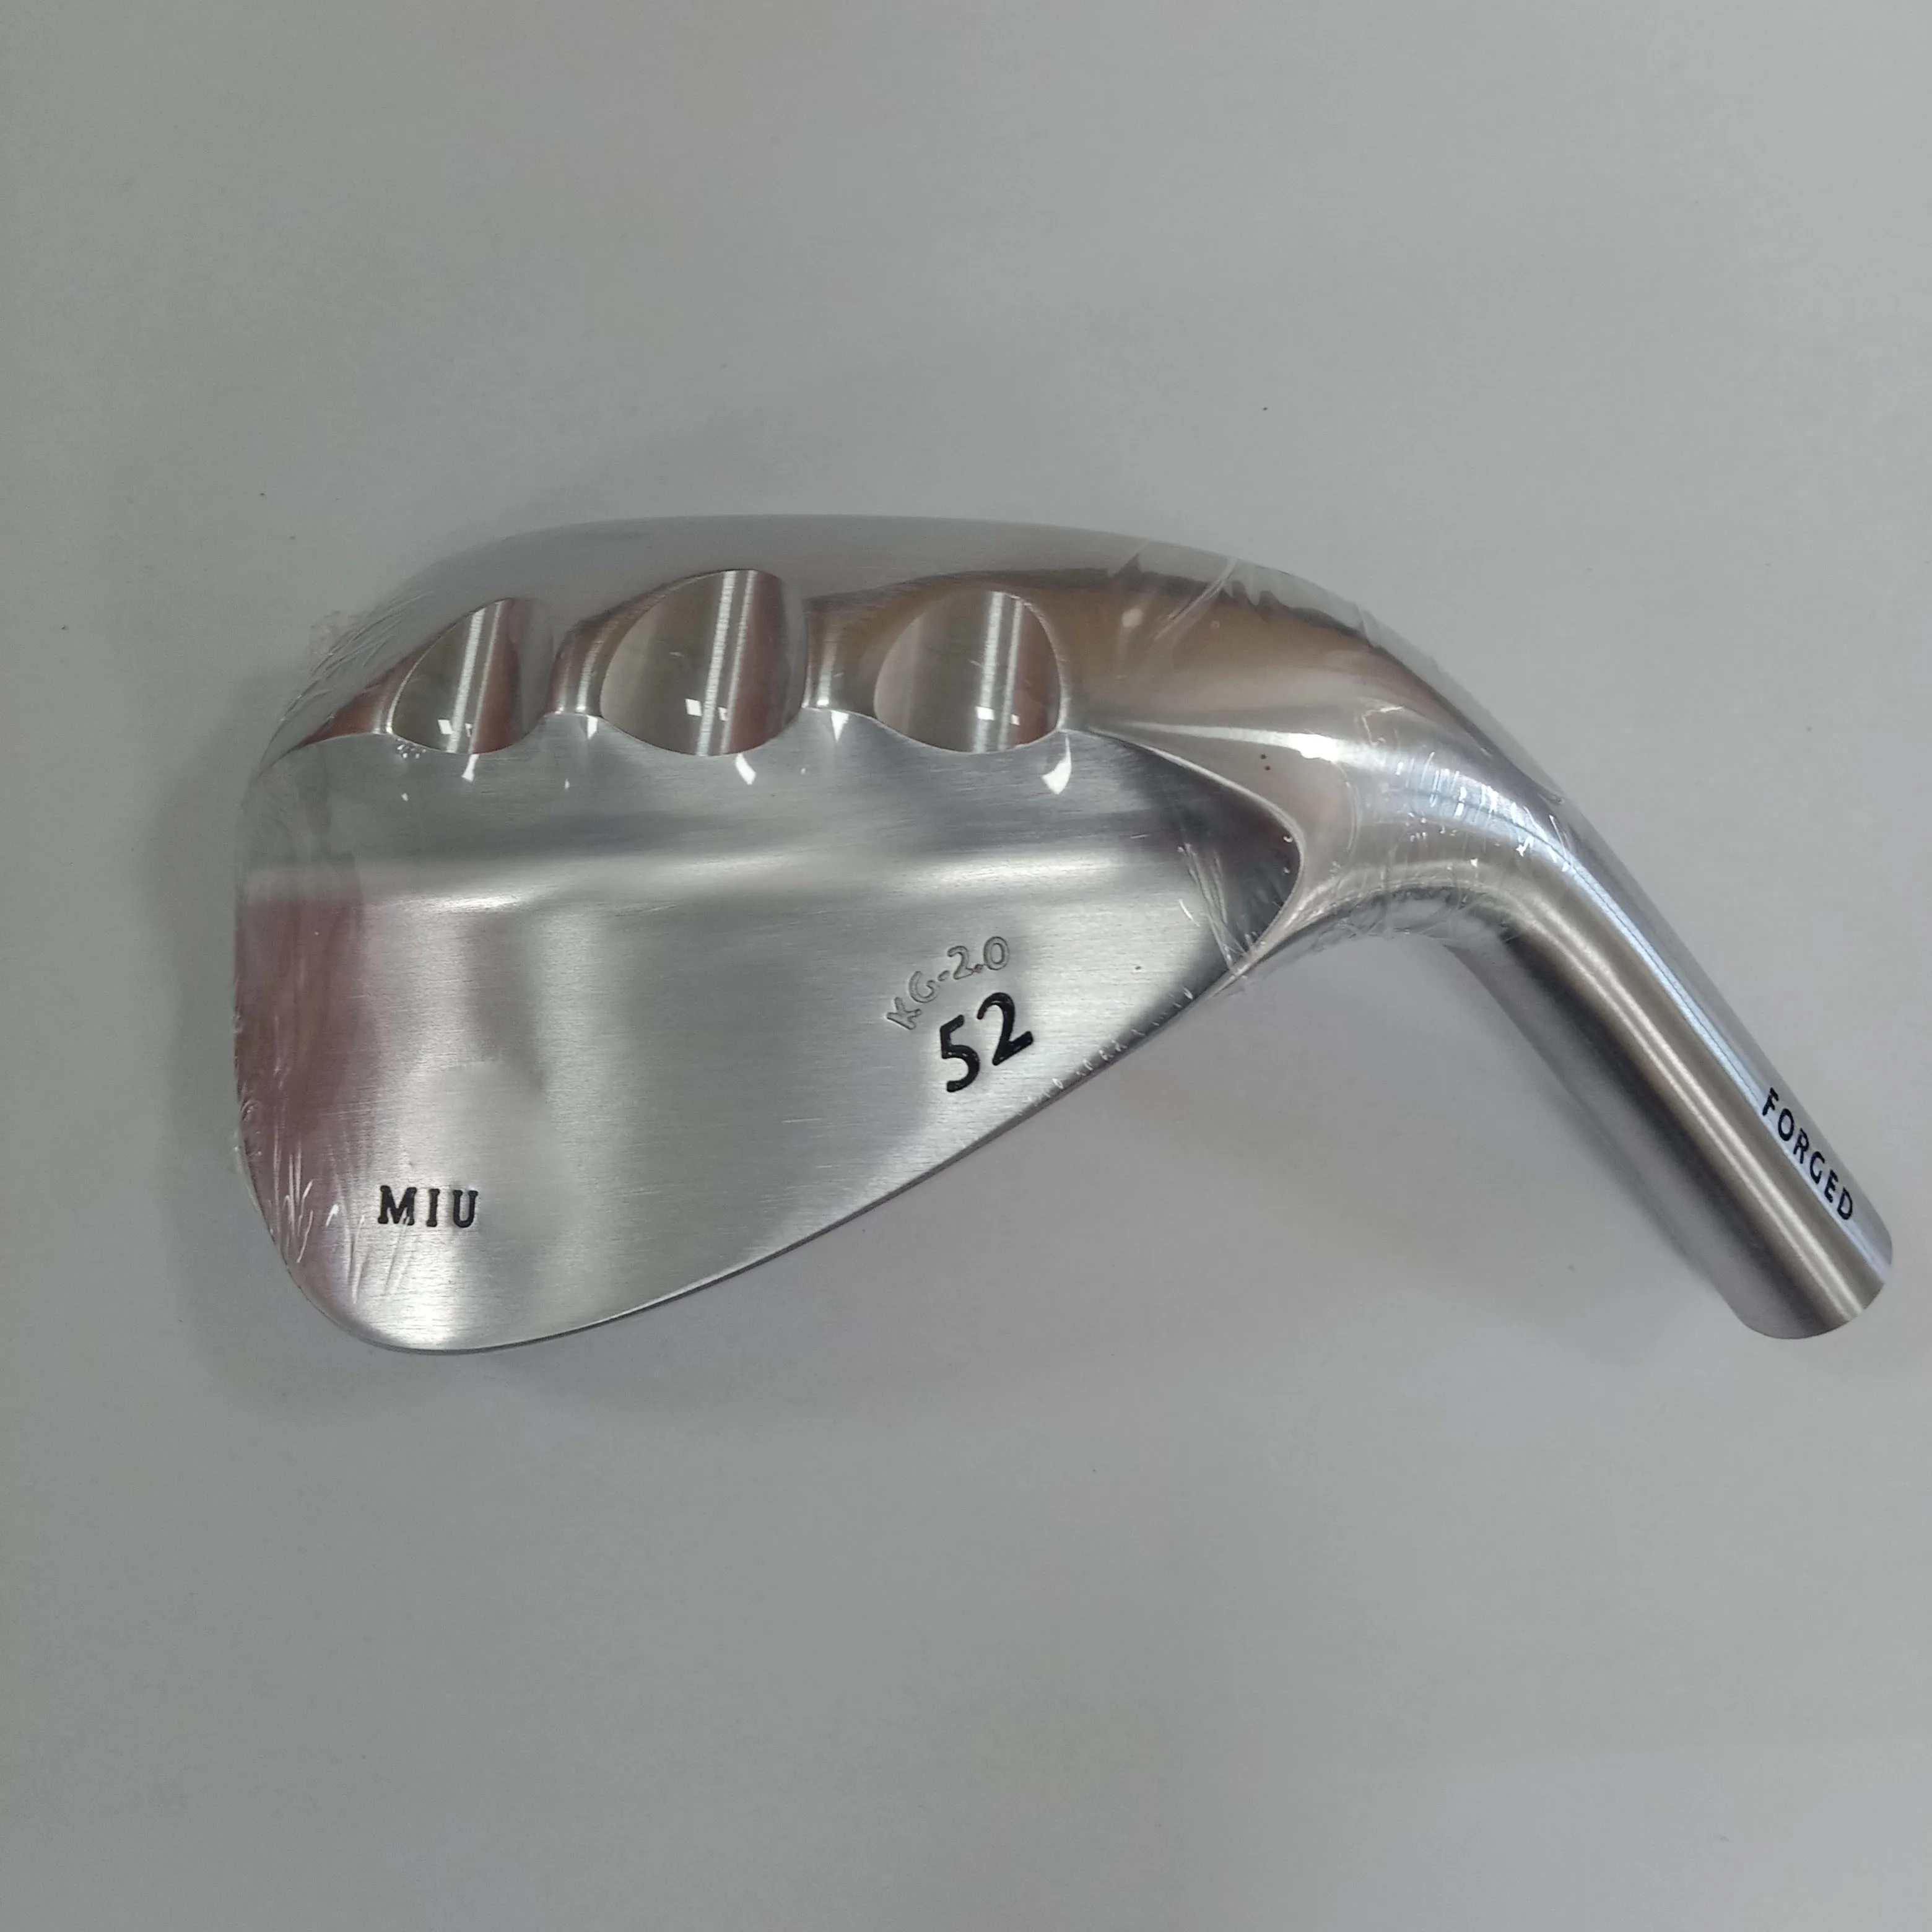 Клинья для гольфа MIUR MIUR kg-2.0 Только клиновидная головка для гольфа из мягкого железа 52 56 60 градусов 0